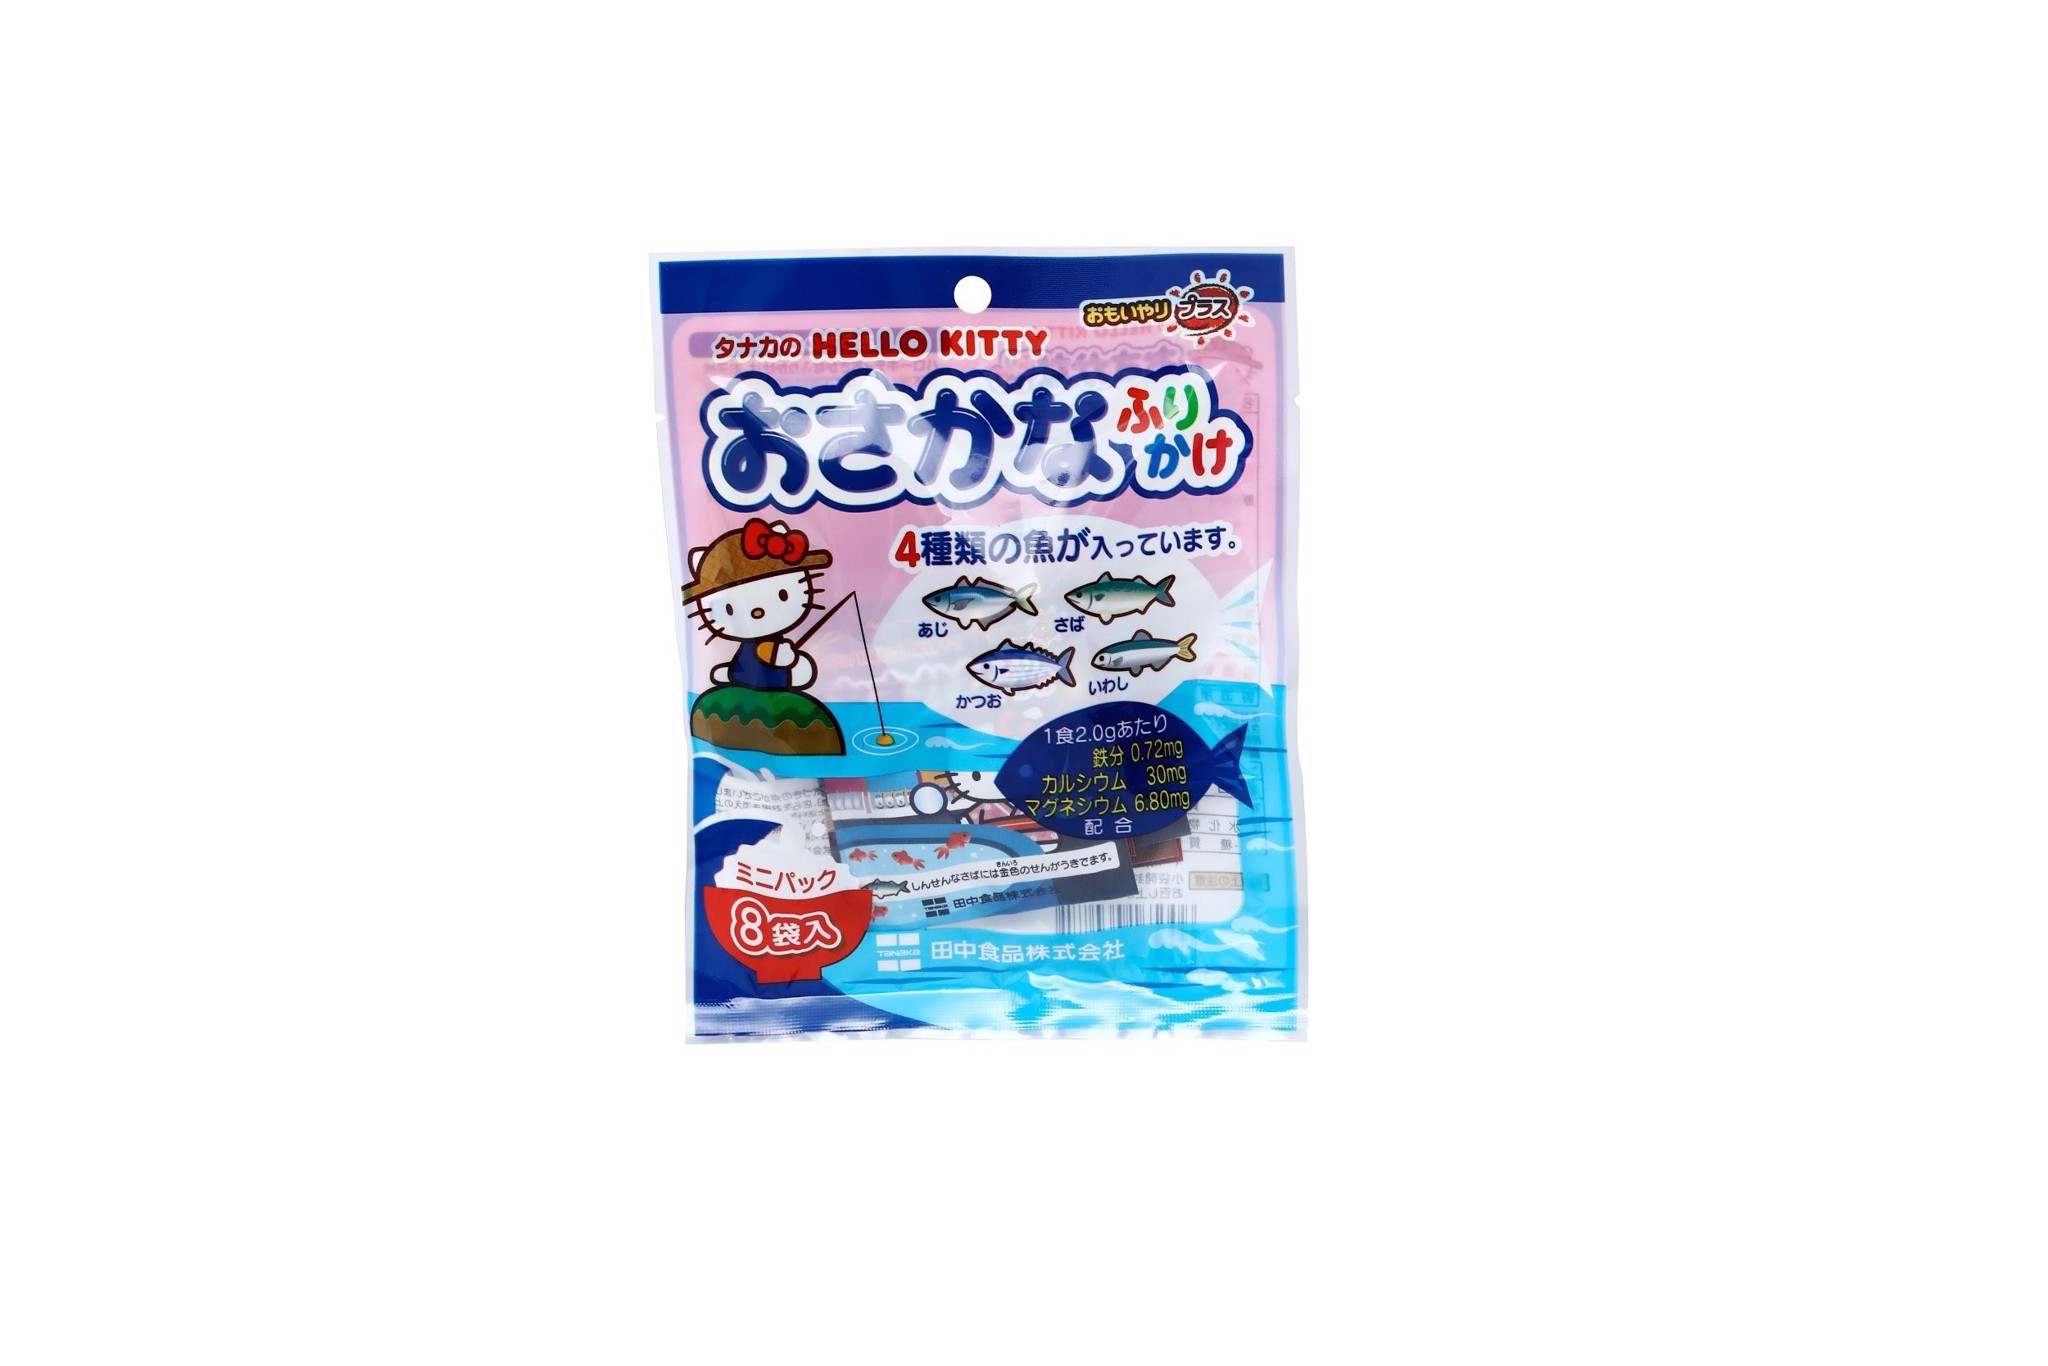 TANAKA FOODS - Rắc cơm vị cá HELLO KITTY 8 gói 